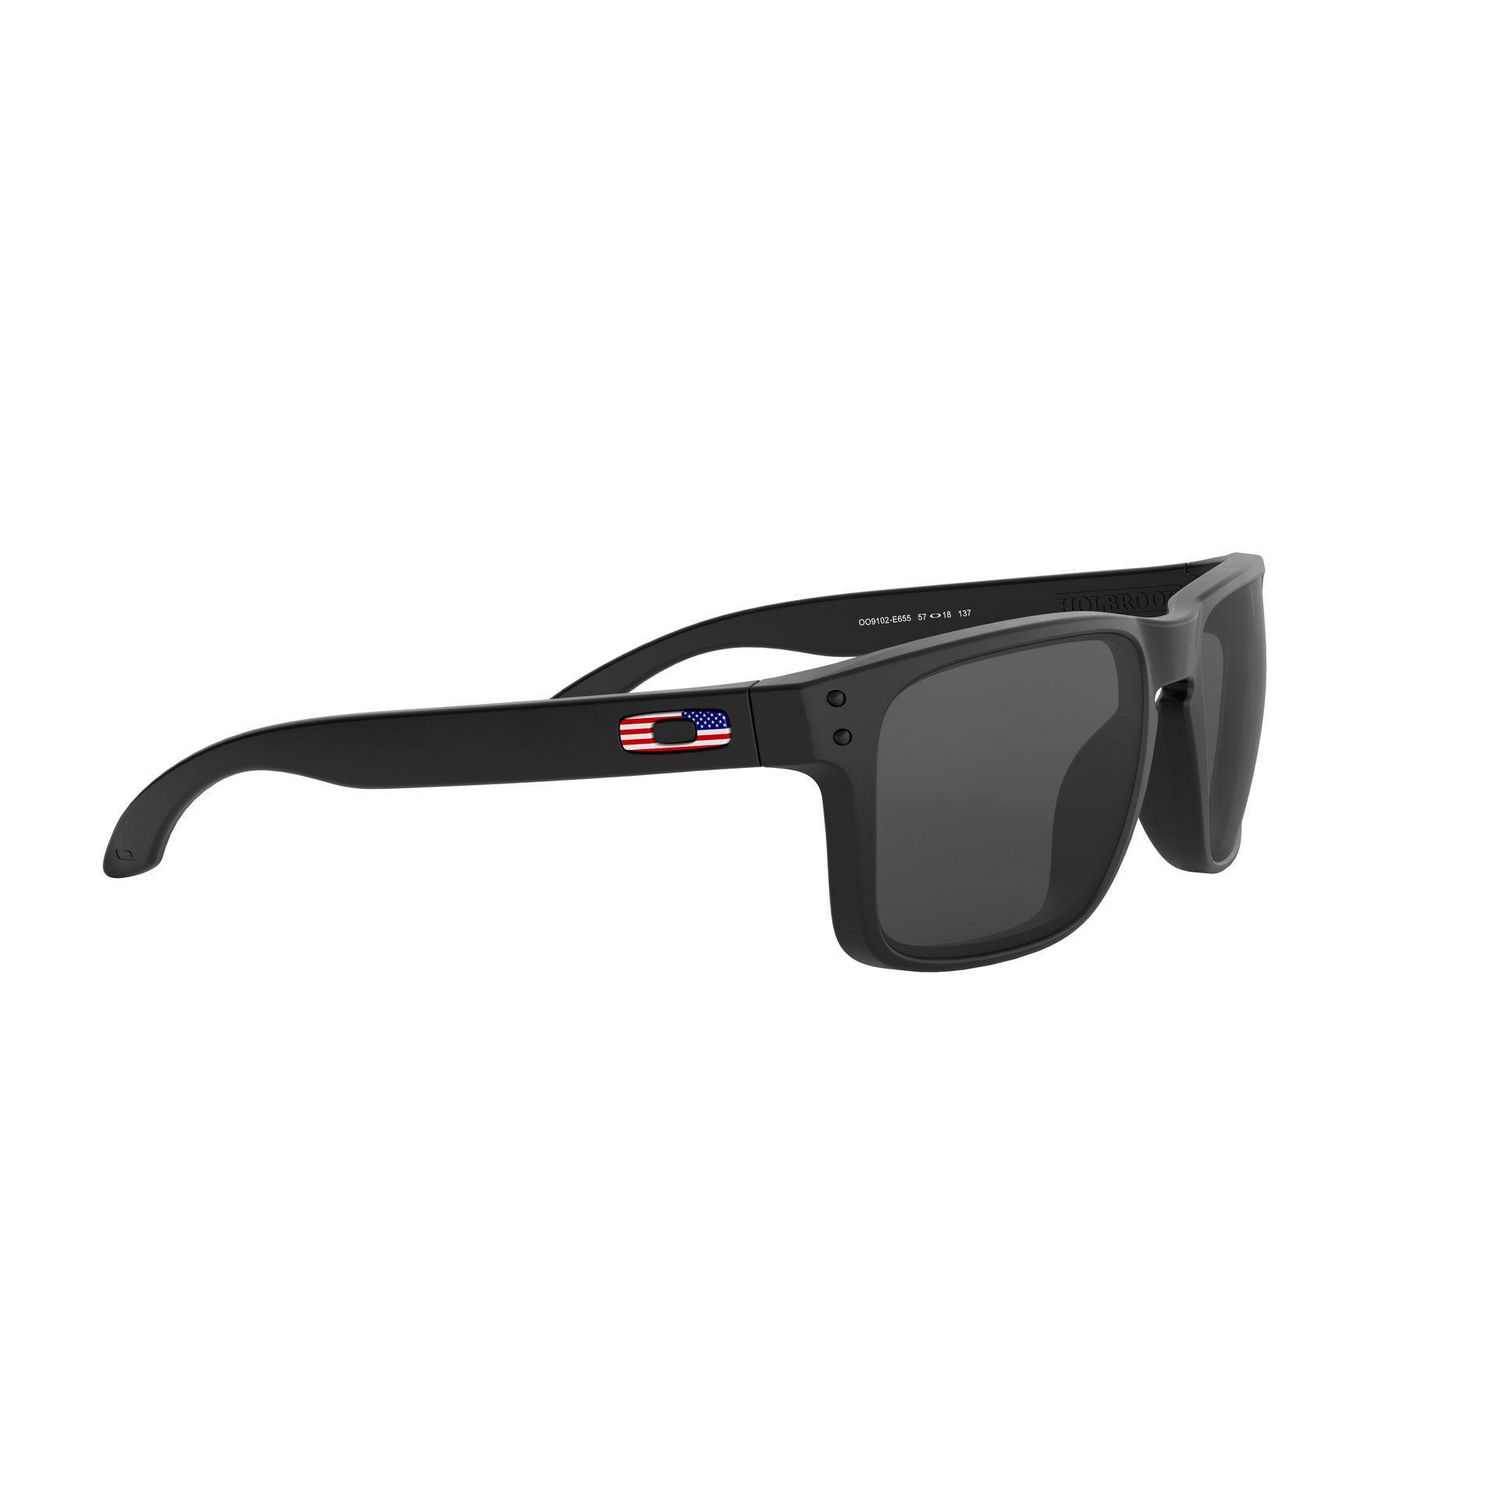 OAKLEY Holbrook Tonal USA Flag Matte Black & Gray Sunglasses